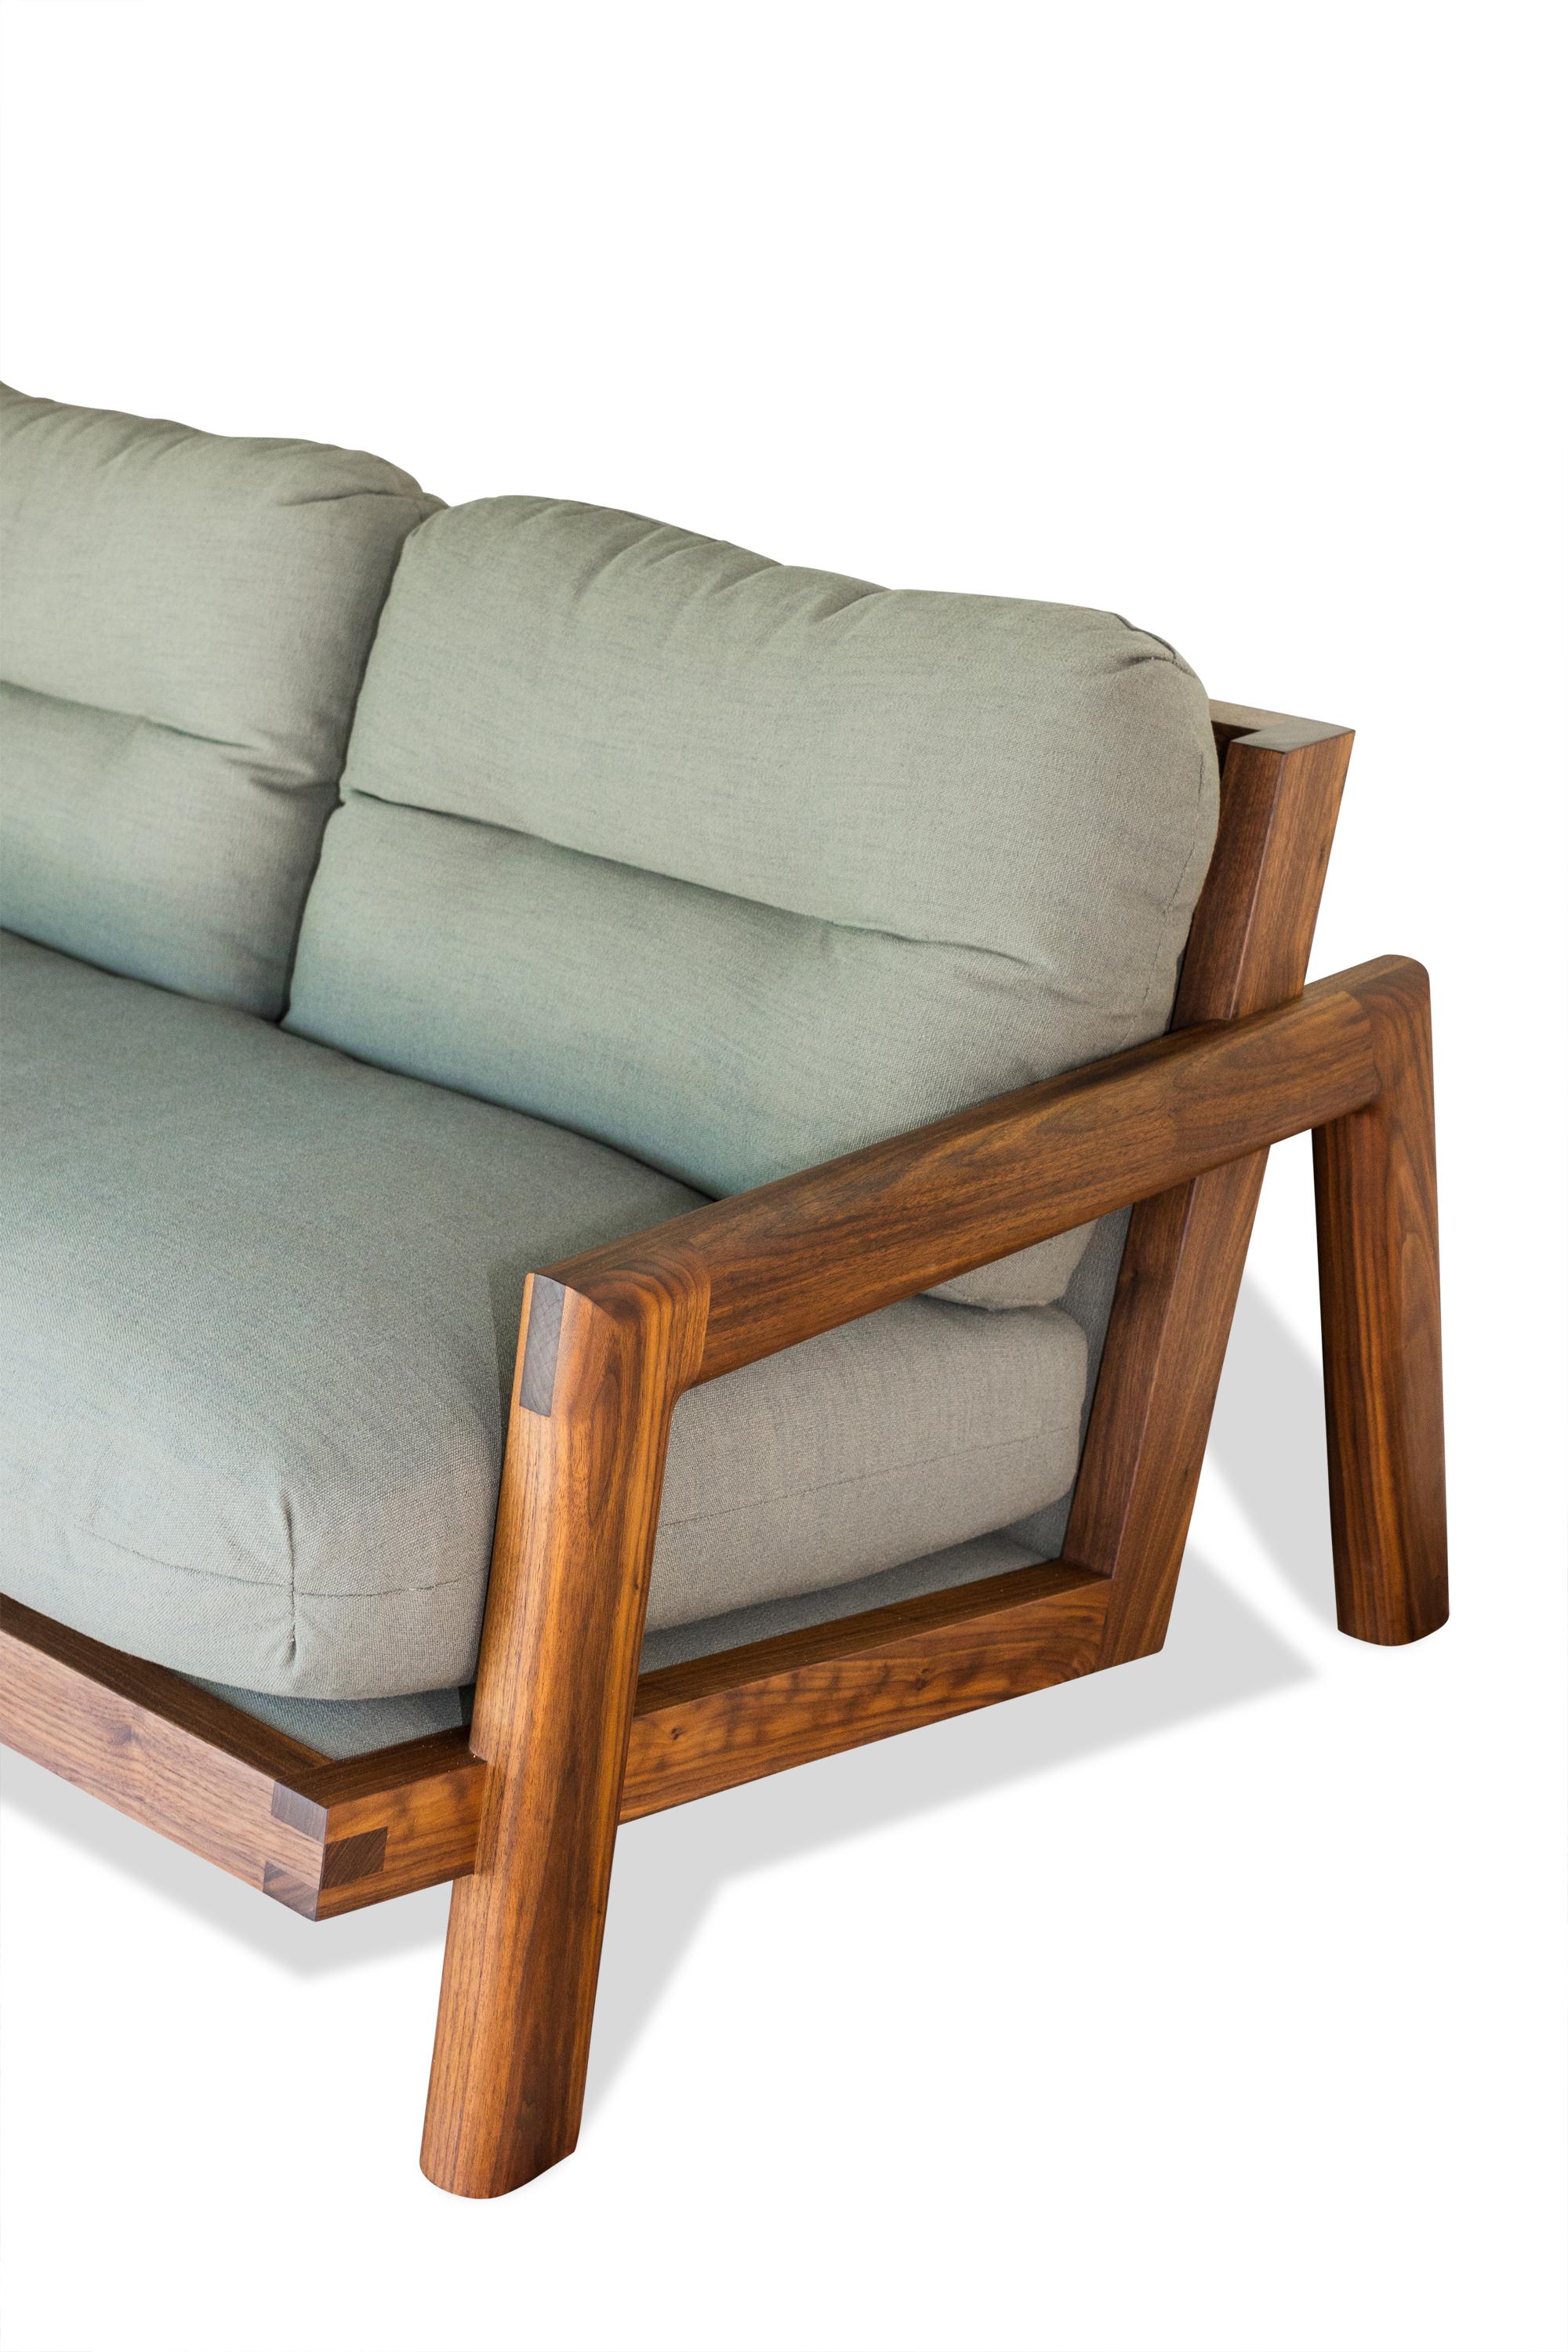 Das Sofa TAMBU wurde durch die Gegenüberstellung von organischen und geometrischen Formen inspiriert und entstand aus dem Wunsch, ein äußerst bequemes und zugleich elegantes Sitzmöbel zu schaffen. Wir sind davon überzeugt, dass das Interesse und die